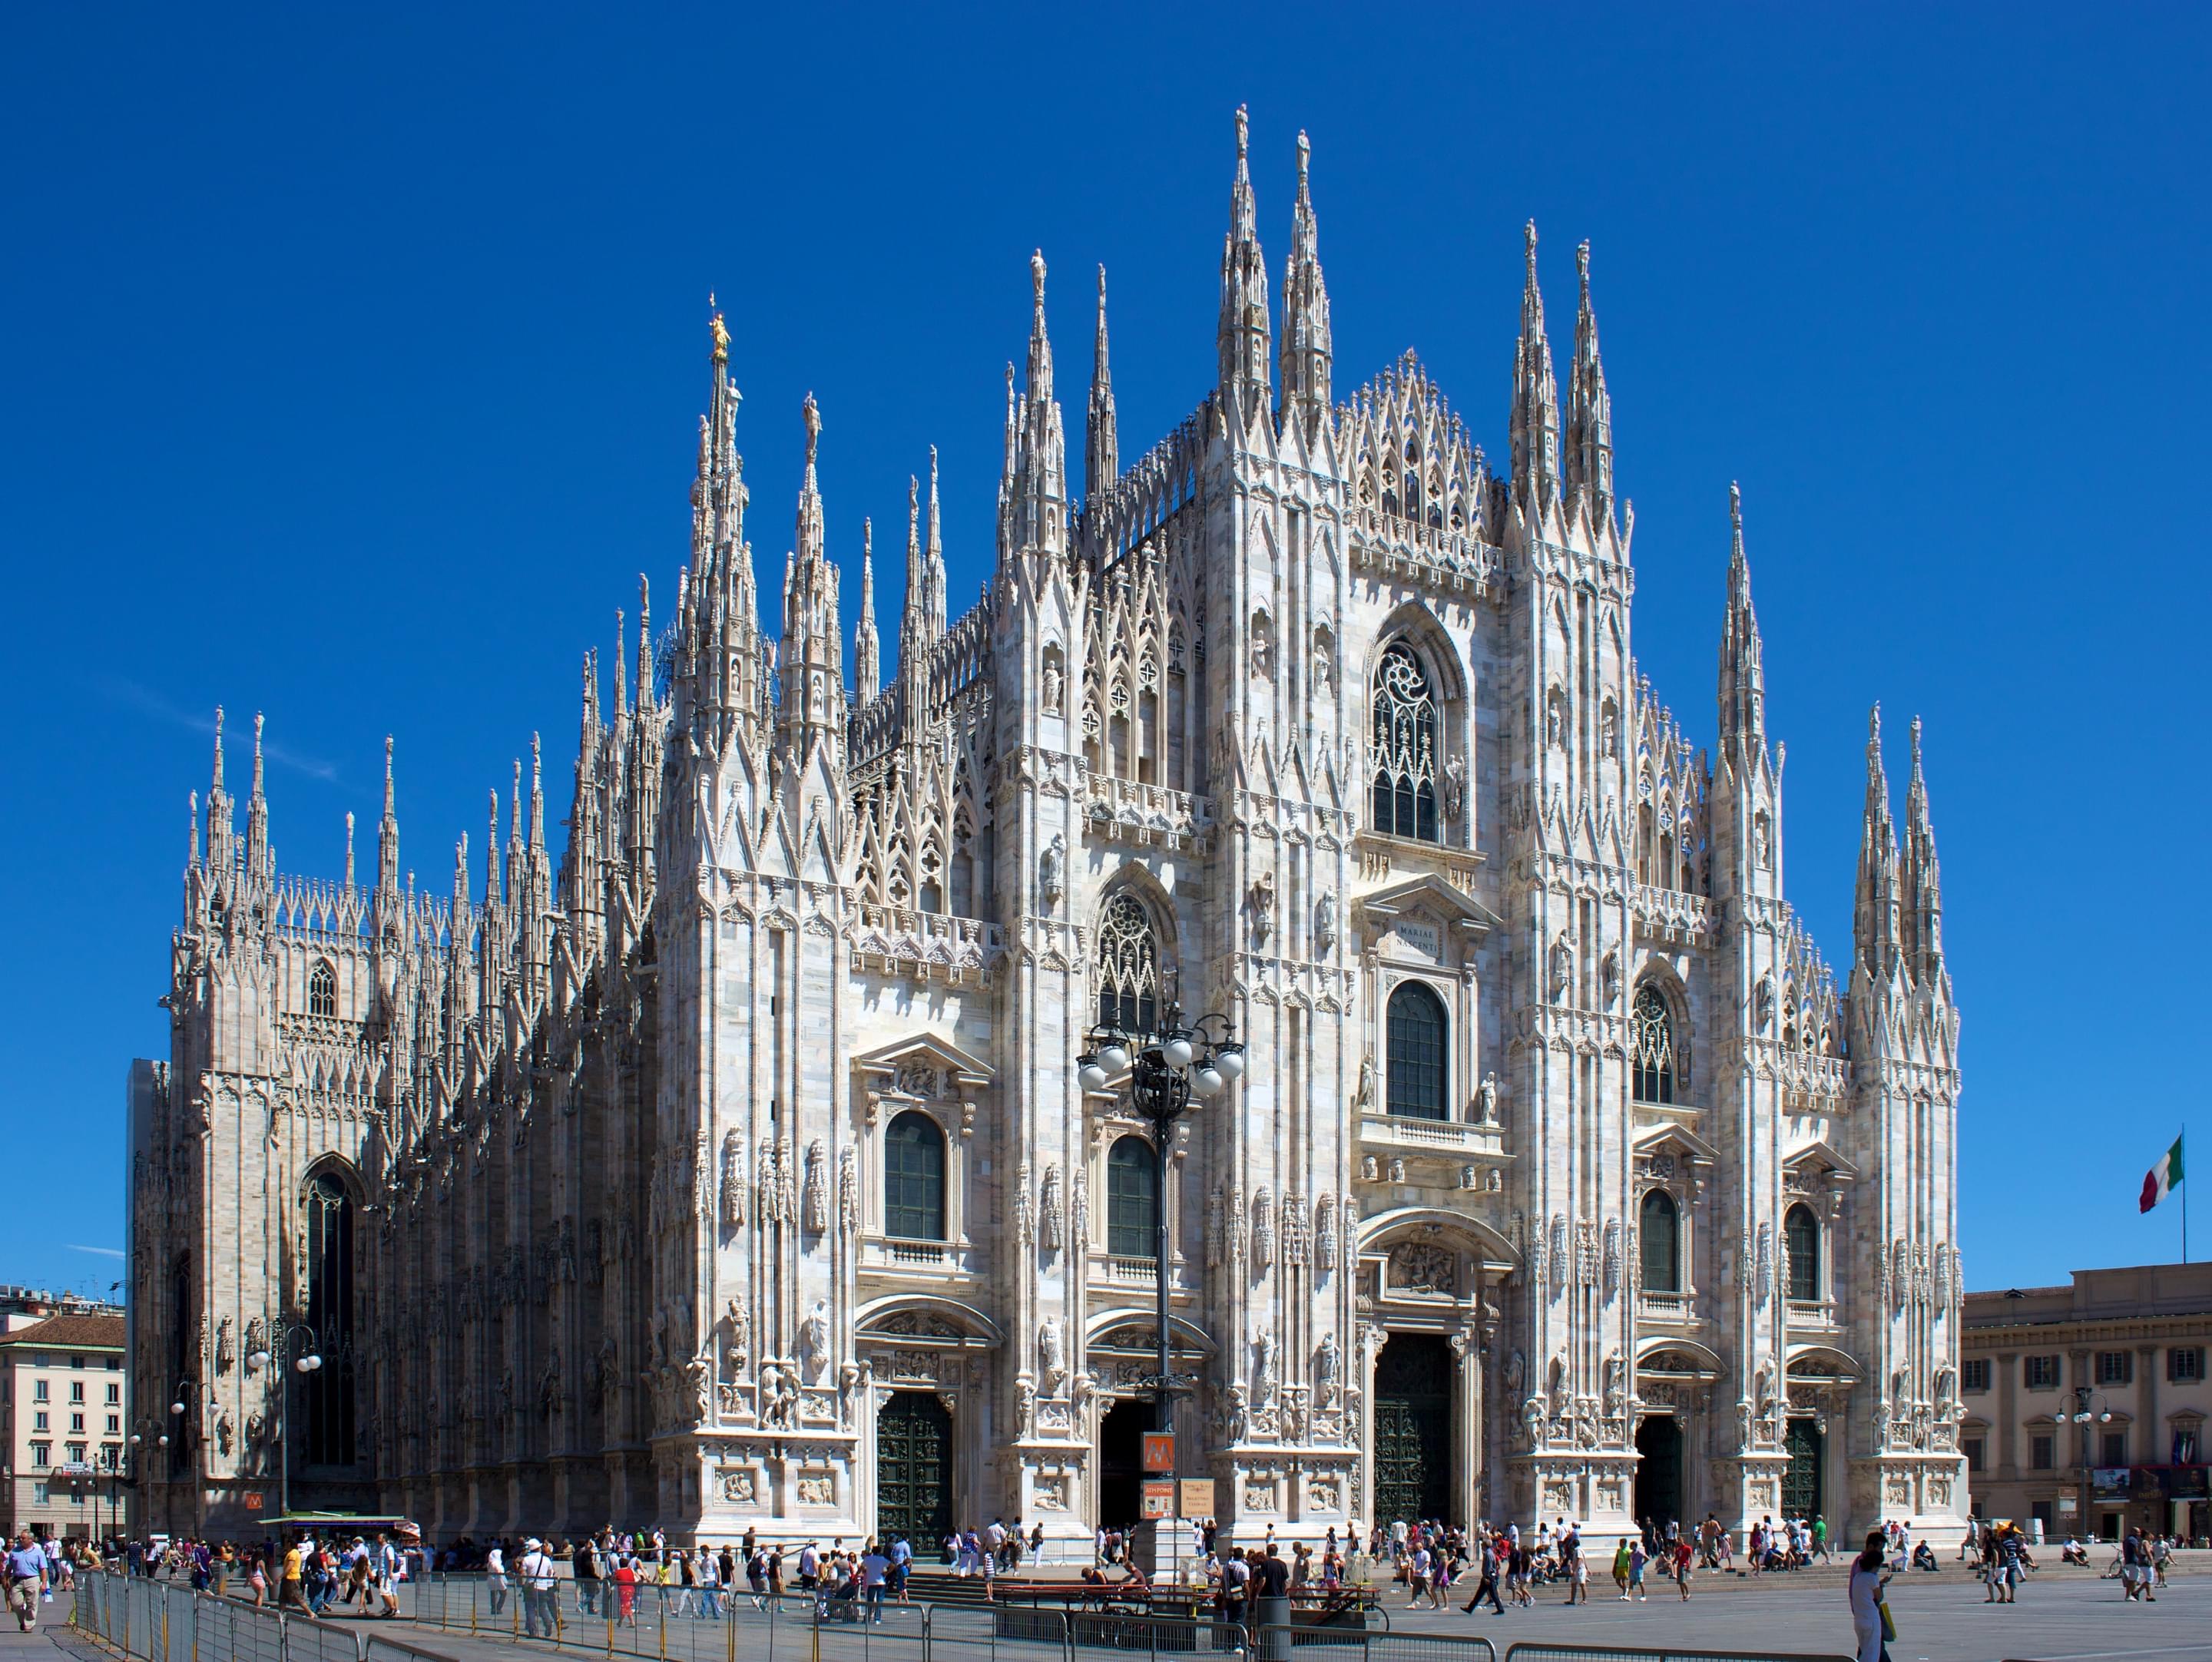 Duomo di Milano Overview